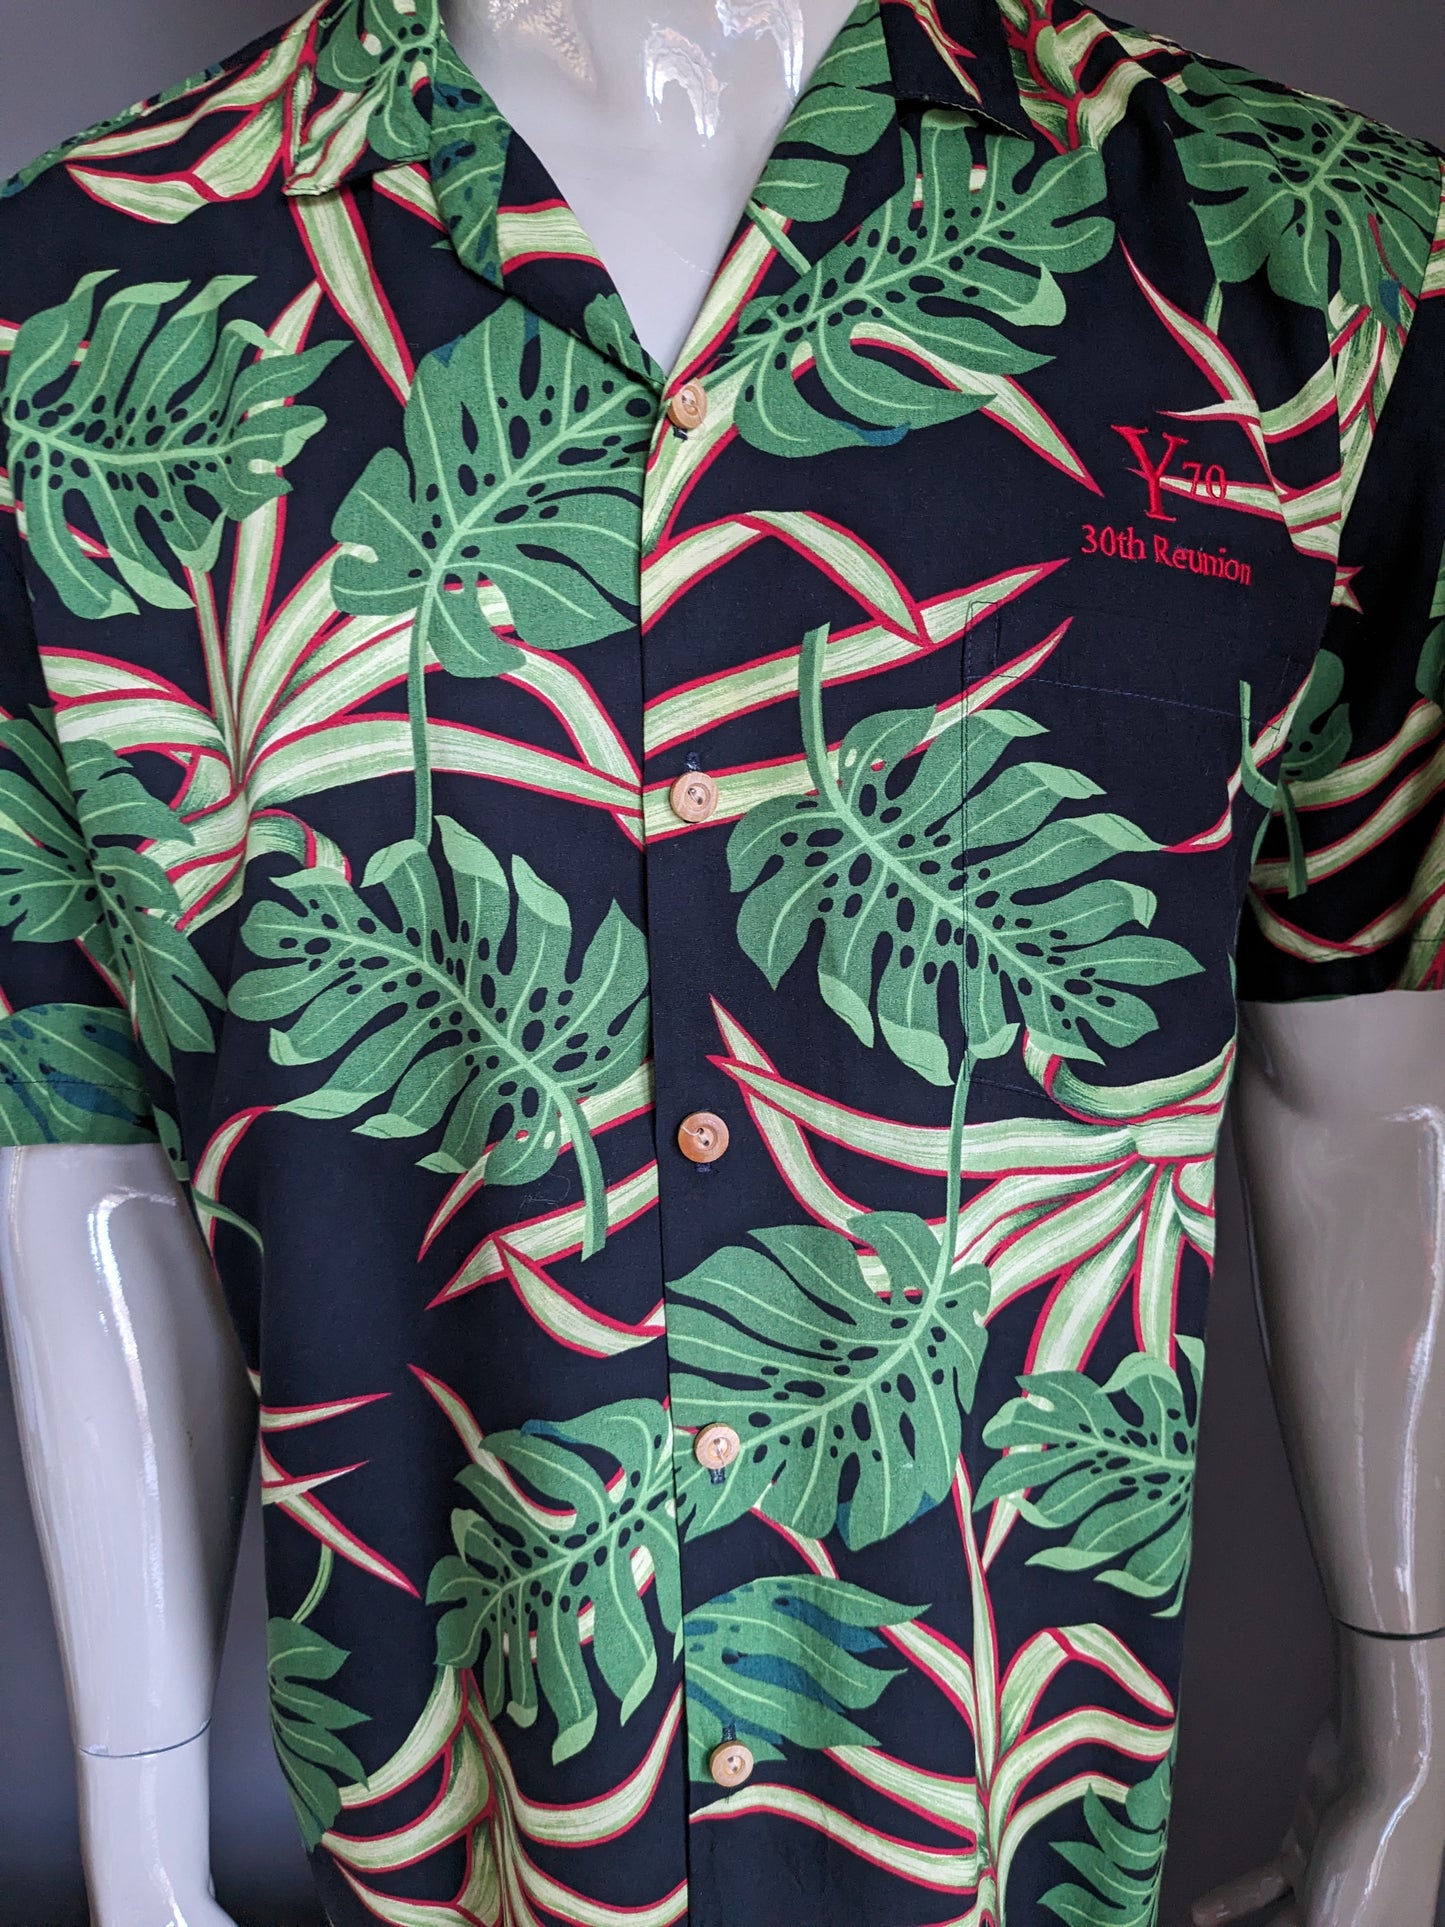 Banana Jack Original Hawaii Shirt Short Sleeve. Black green red print. Size XL. Rayon / viscose